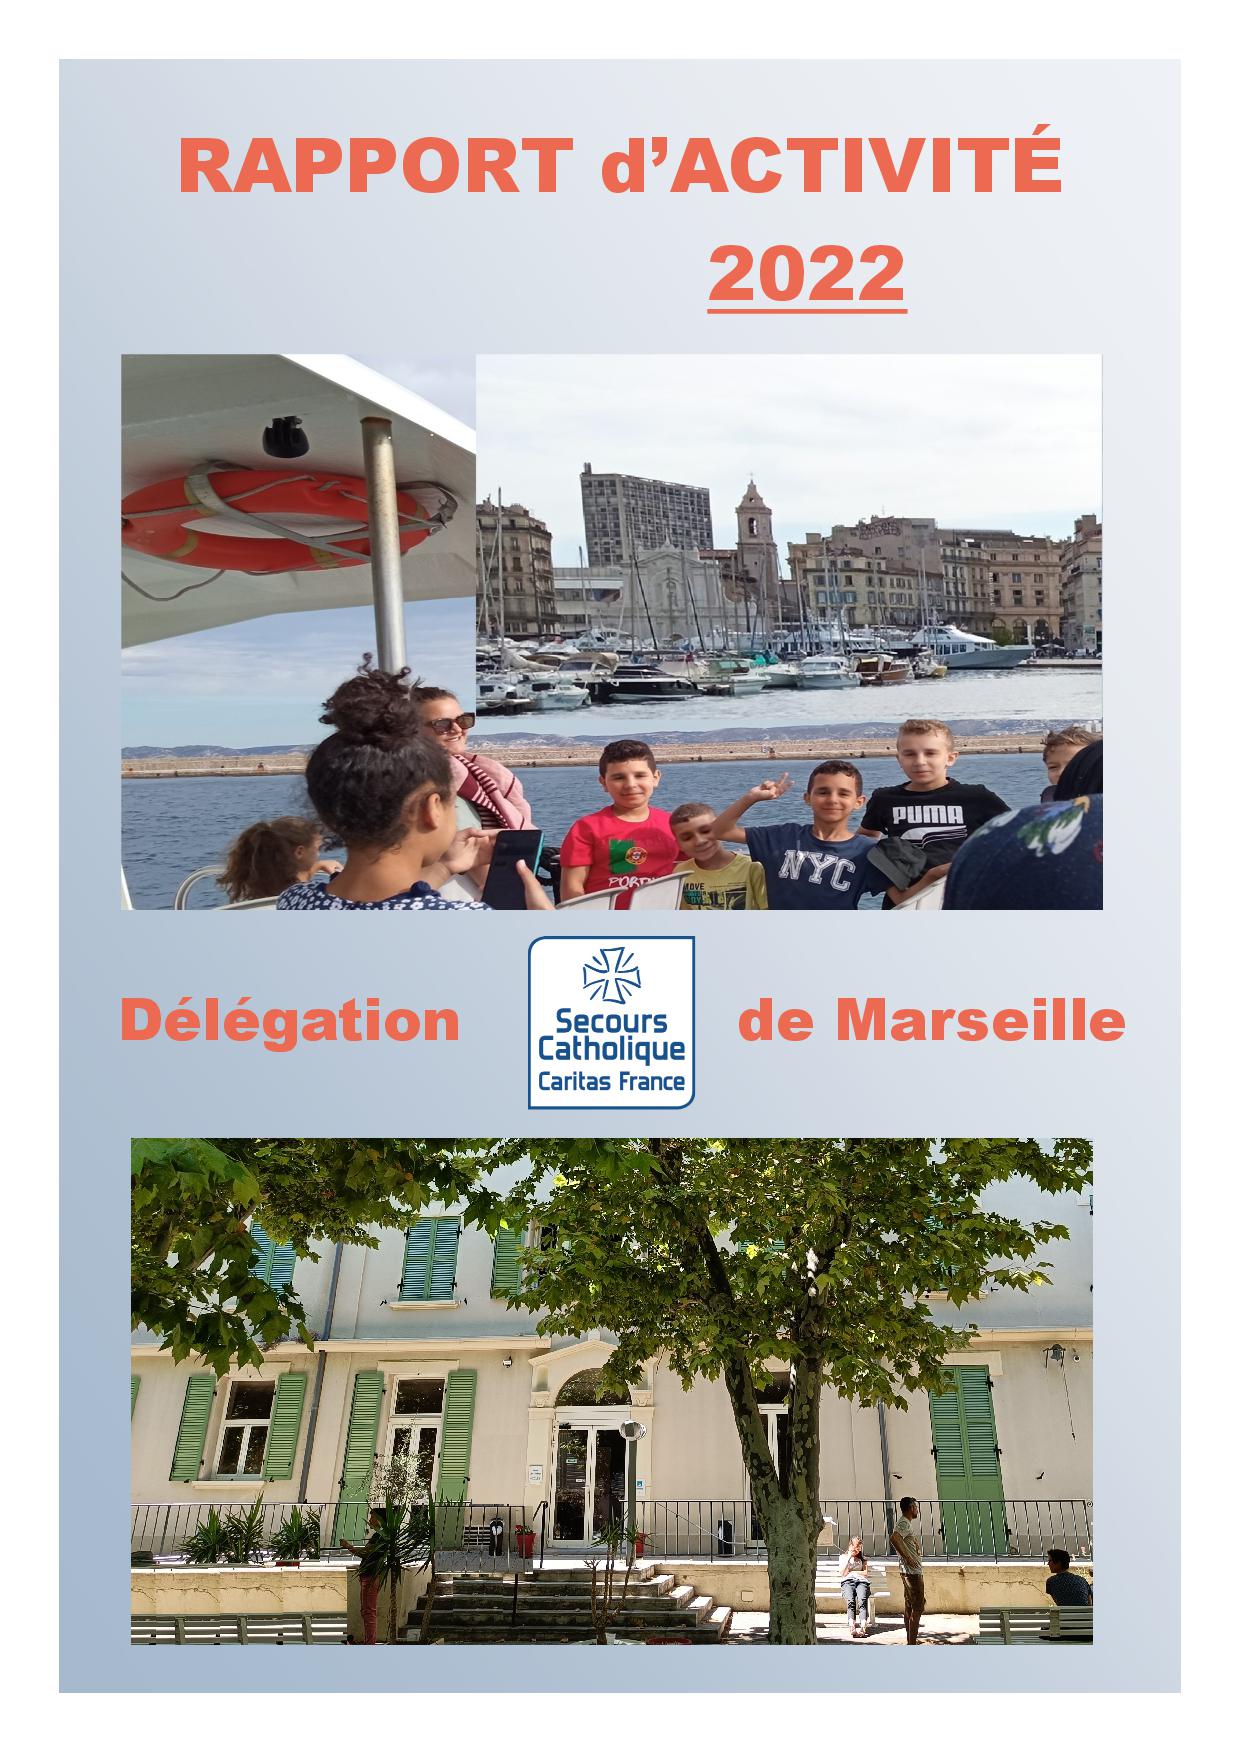 Visuel Rapport d'activité 2022 de la Délégation du Secours Catholique de Marseille